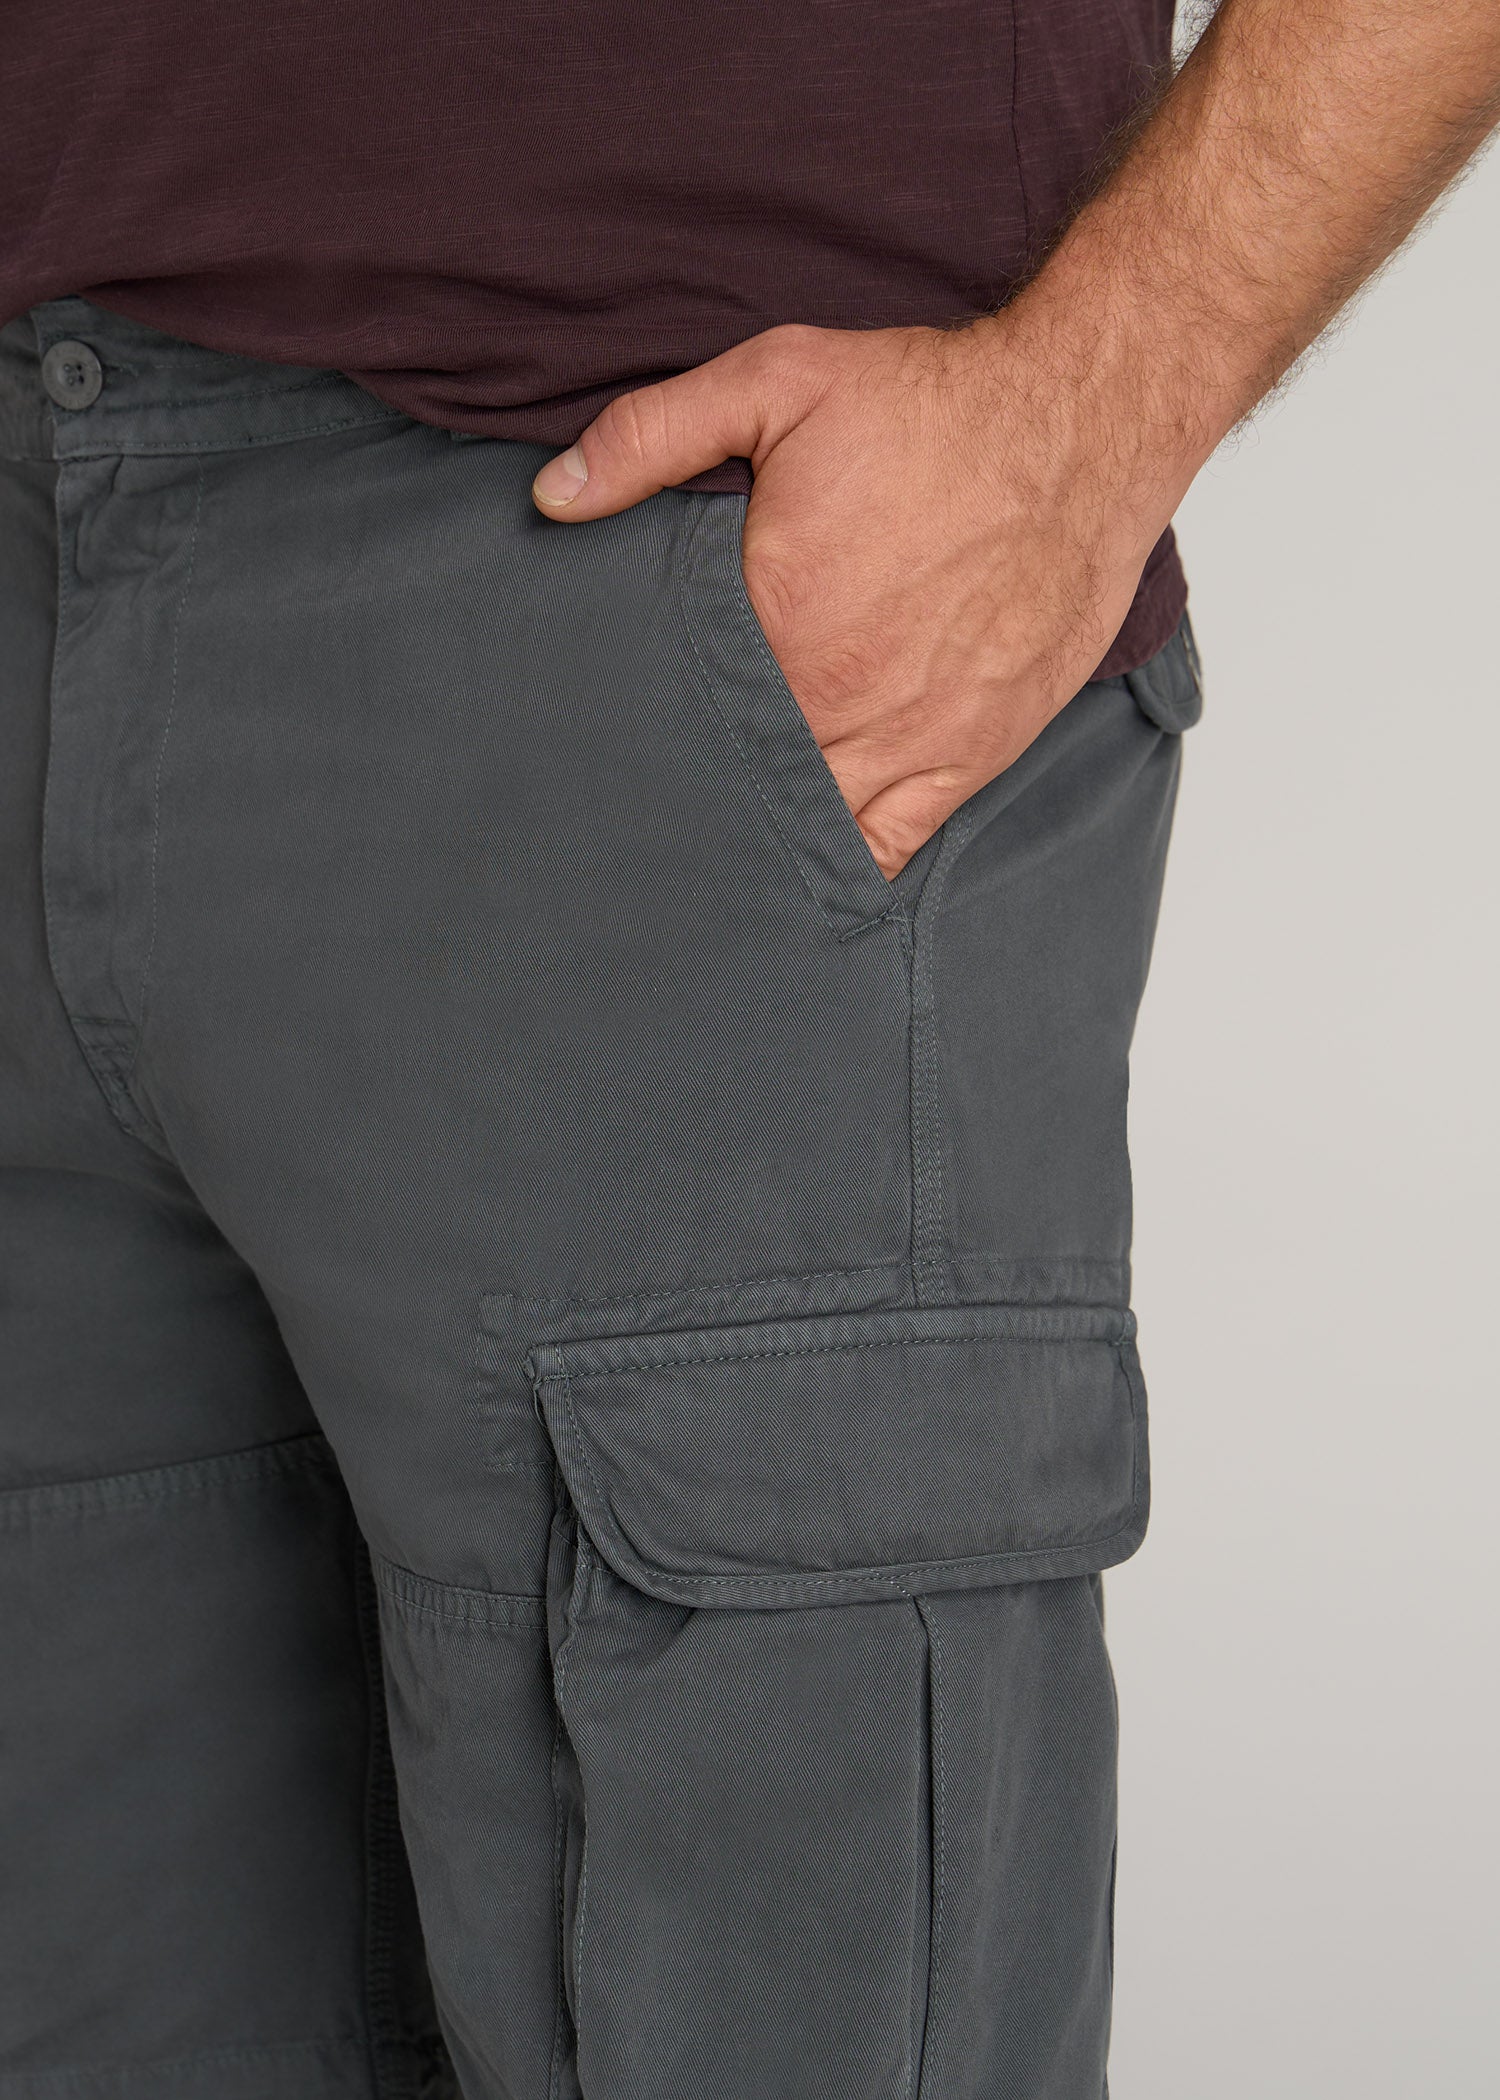     American-Tall-Men-LJ-Cargo-Pocket-Shorts-Flint-Grey-detail